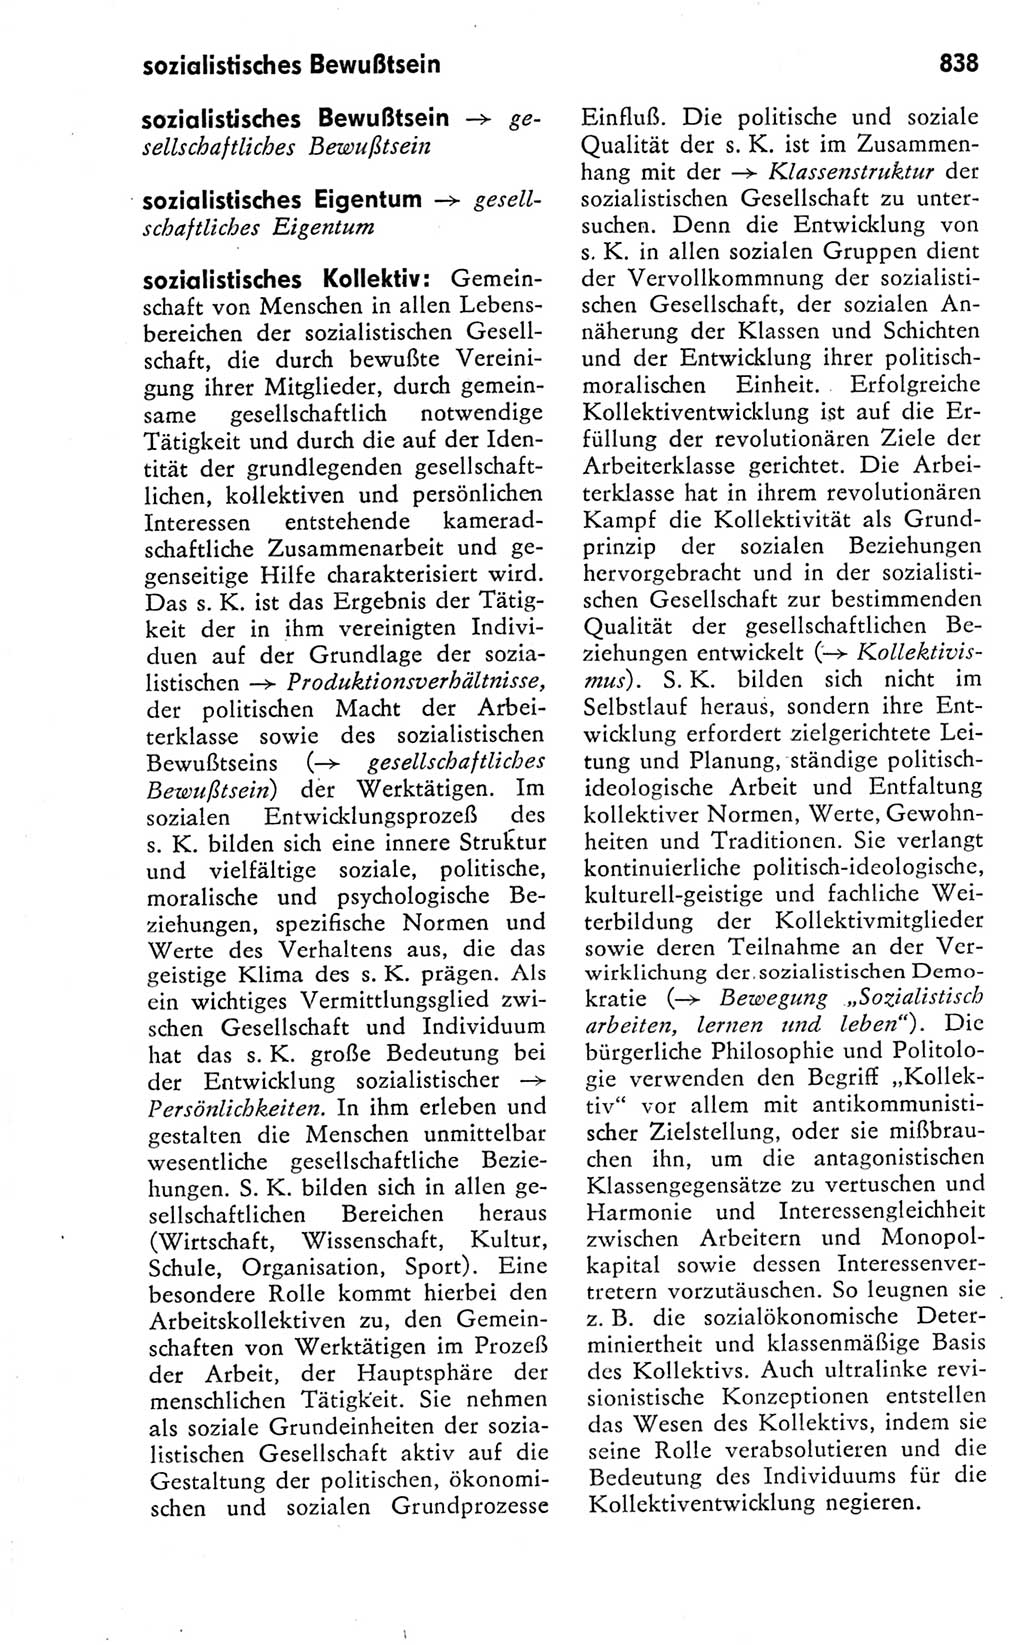 Kleines politisches Wörterbuch [Deutsche Demokratische Republik (DDR)] 1978, Seite 838 (Kl. pol. Wb. DDR 1978, S. 838)